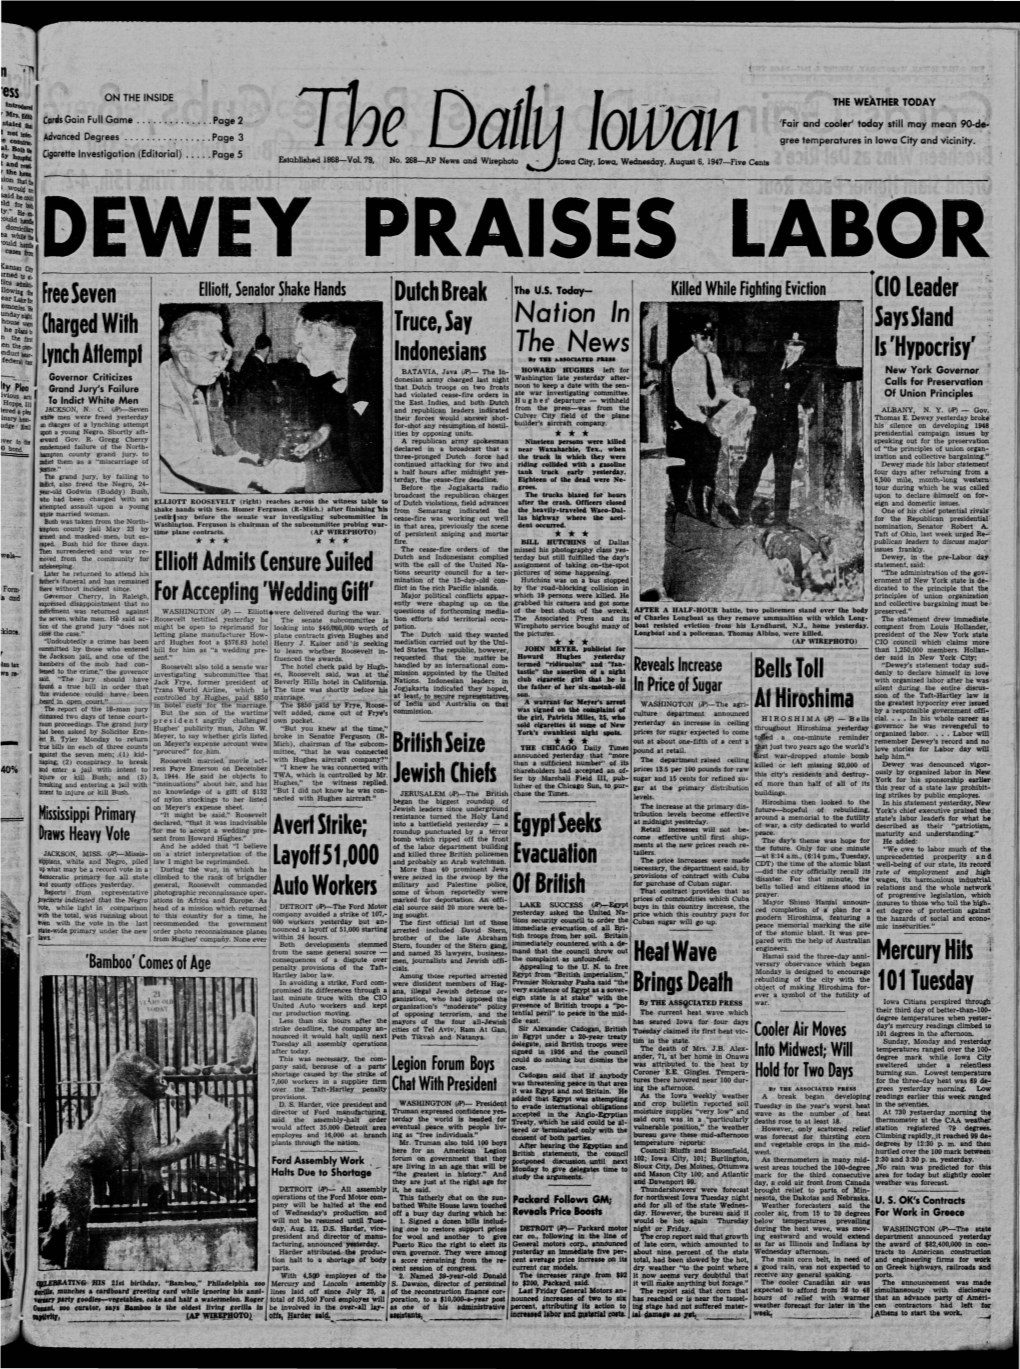 Daily Iowan (Iowa City, Iowa), 1947-08-06